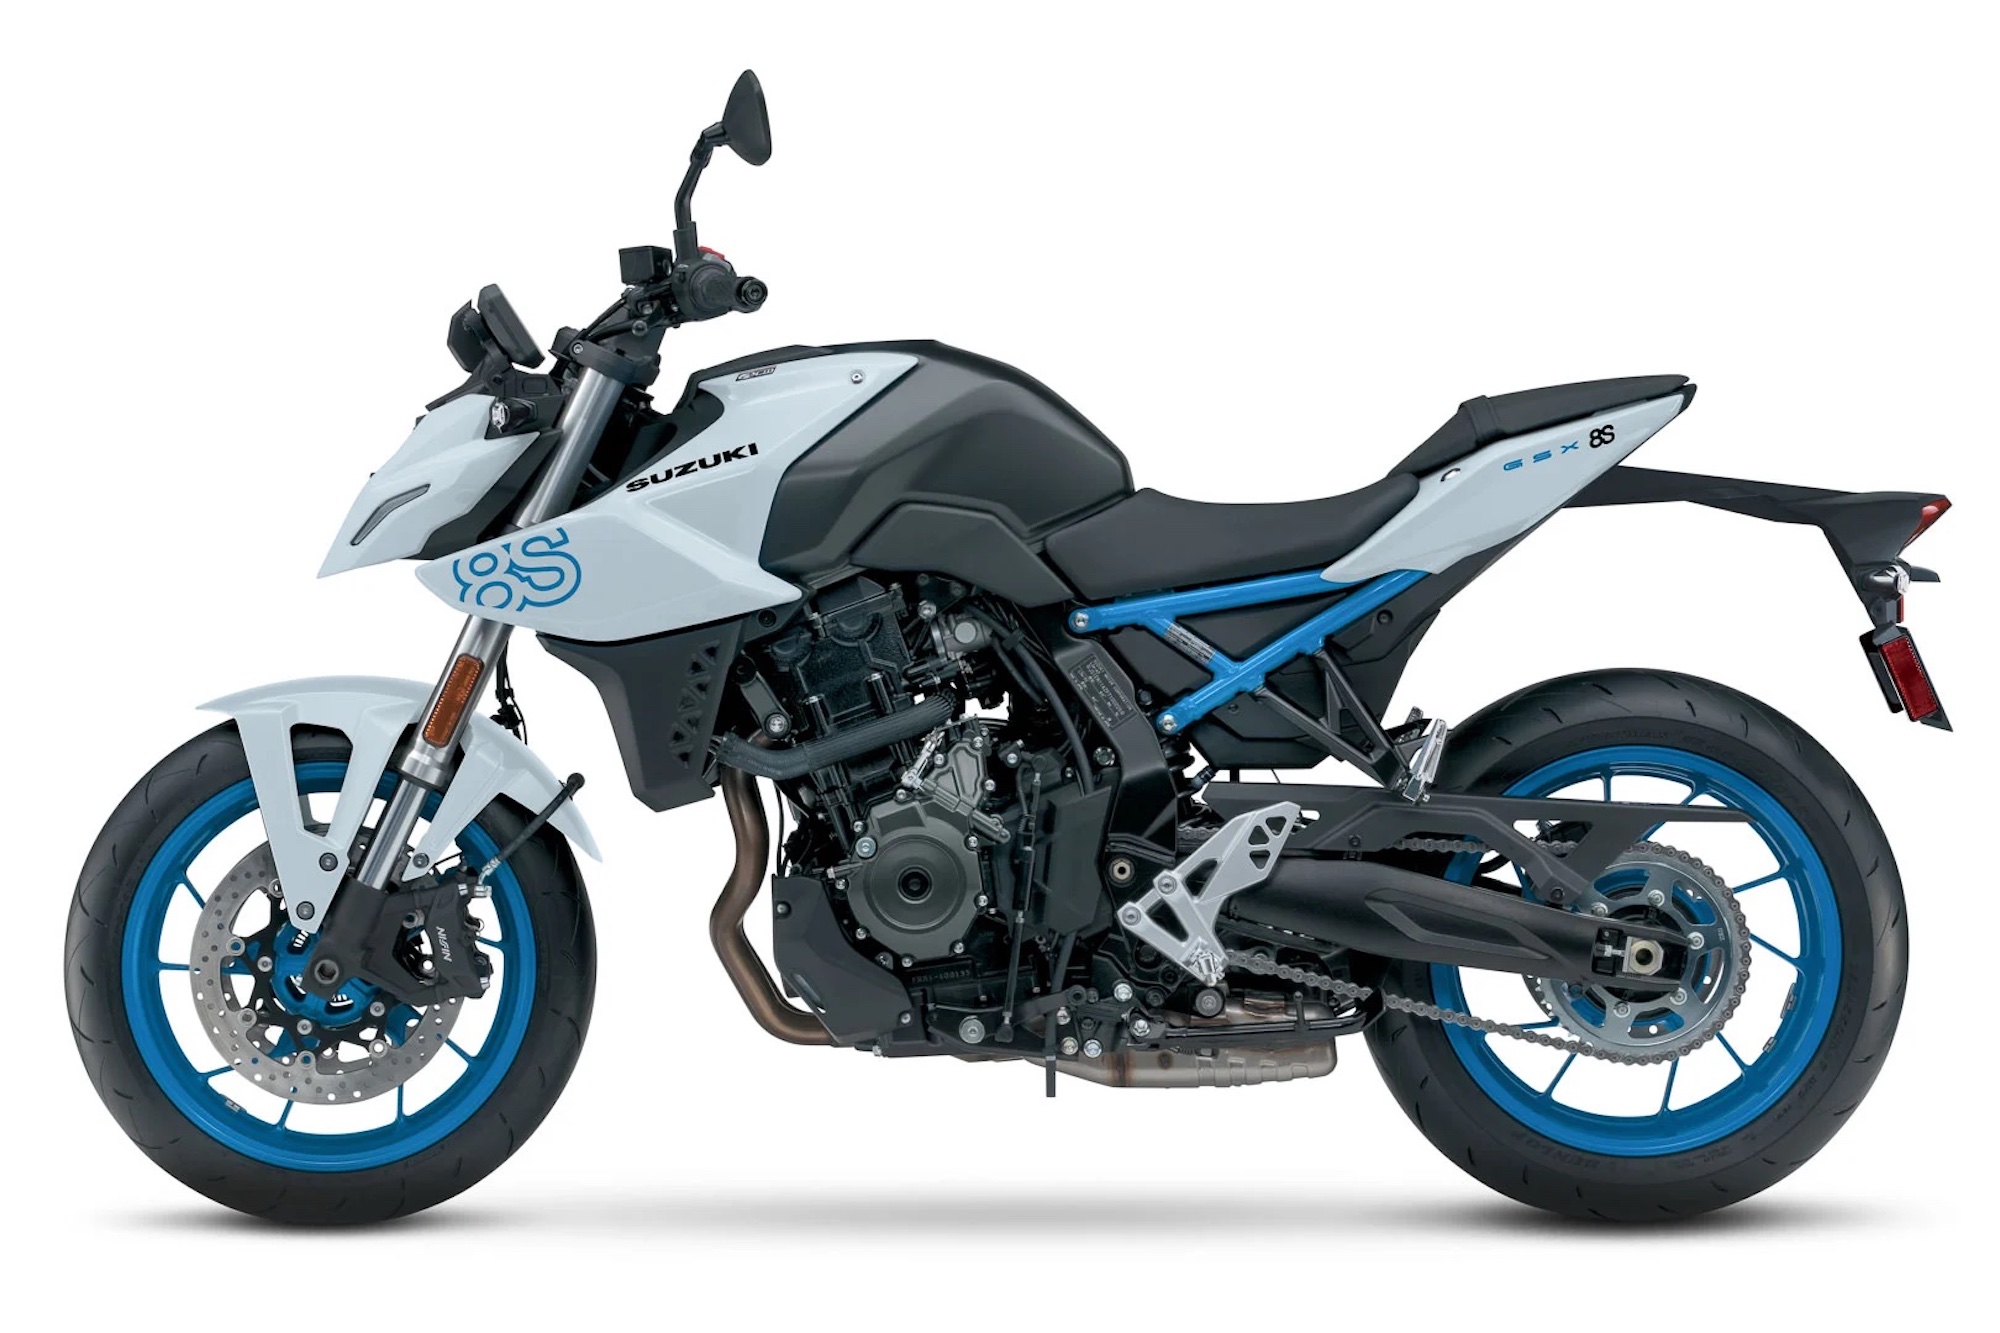 这是铃木GSX系列的最新产品:GSX- 8s。媒体来源自终极摩托车。